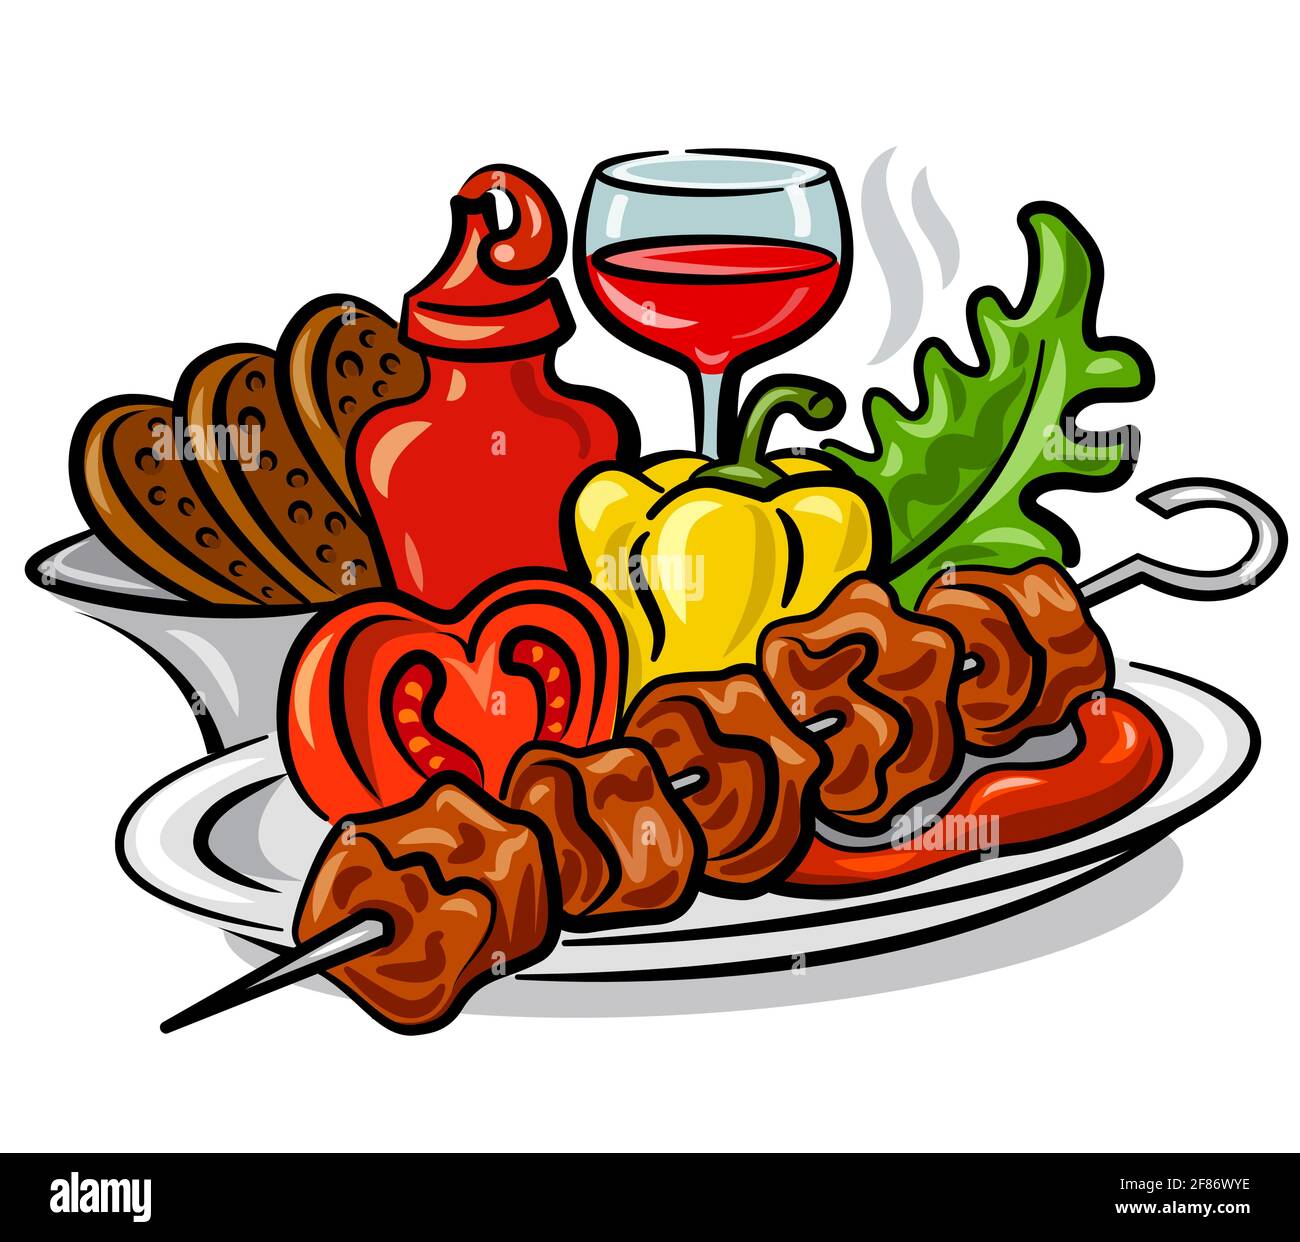 illustrazione del kebab caldo alla griglia con ketchup di pomodoro, verdure e lattuga Illustrazione Vettoriale